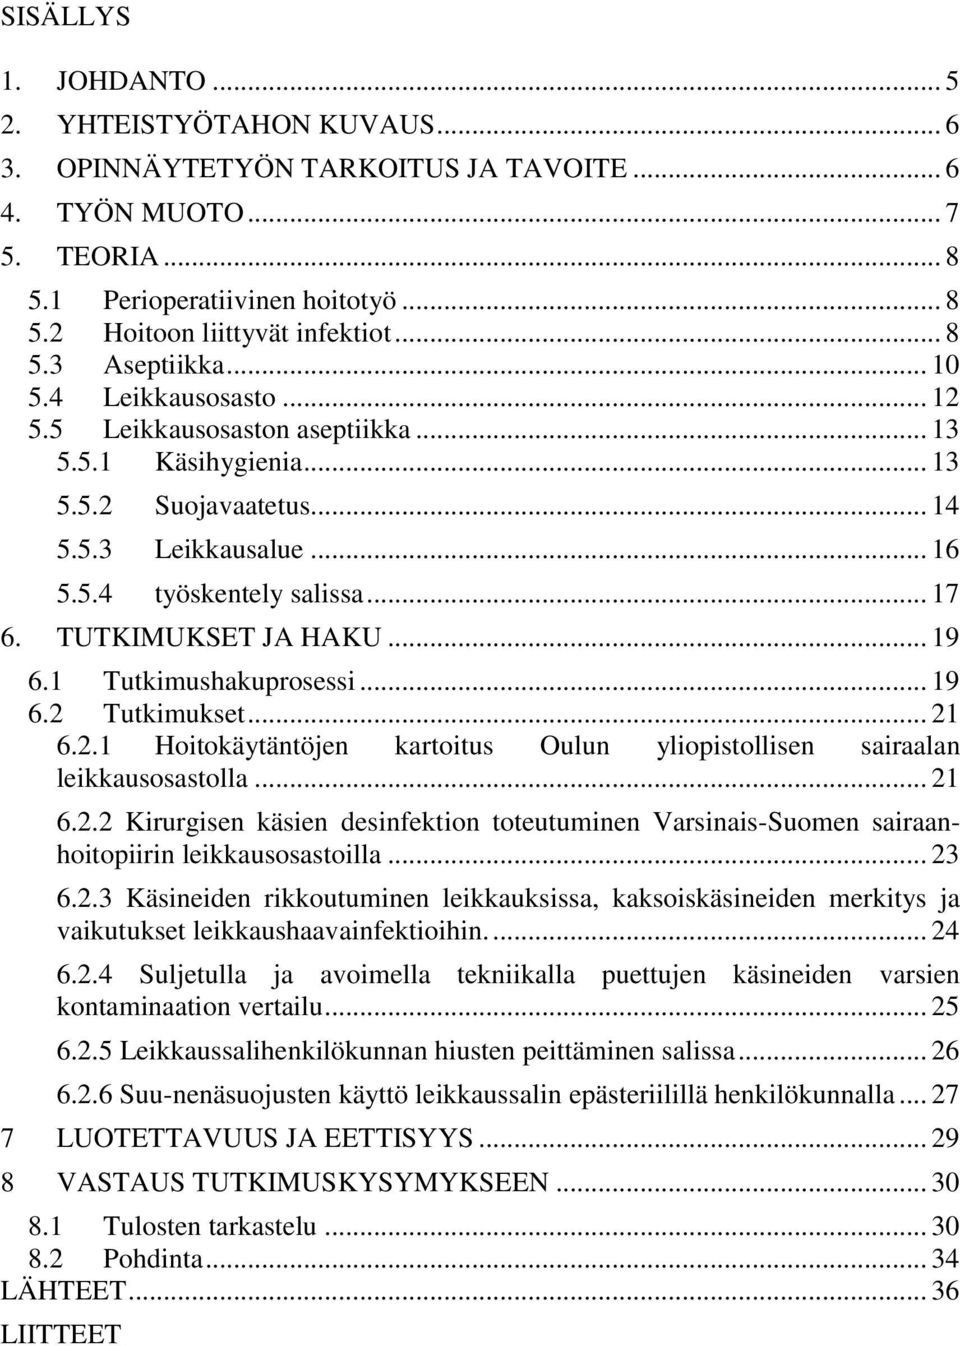 TUTKIMUKSET JA HAKU... 19 6.1 Tutkimushakuprosessi... 19 6.2 Tutkimukset... 21 6.2.1 Hoitokäytäntöjen kartoitus Oulun yliopistollisen sairaalan leikkausosastolla... 21 6.2.2 Kirurgisen käsien desinfektion toteutuminen Varsinais-Suomen sairaanhoitopiirin leikkausosastoilla.